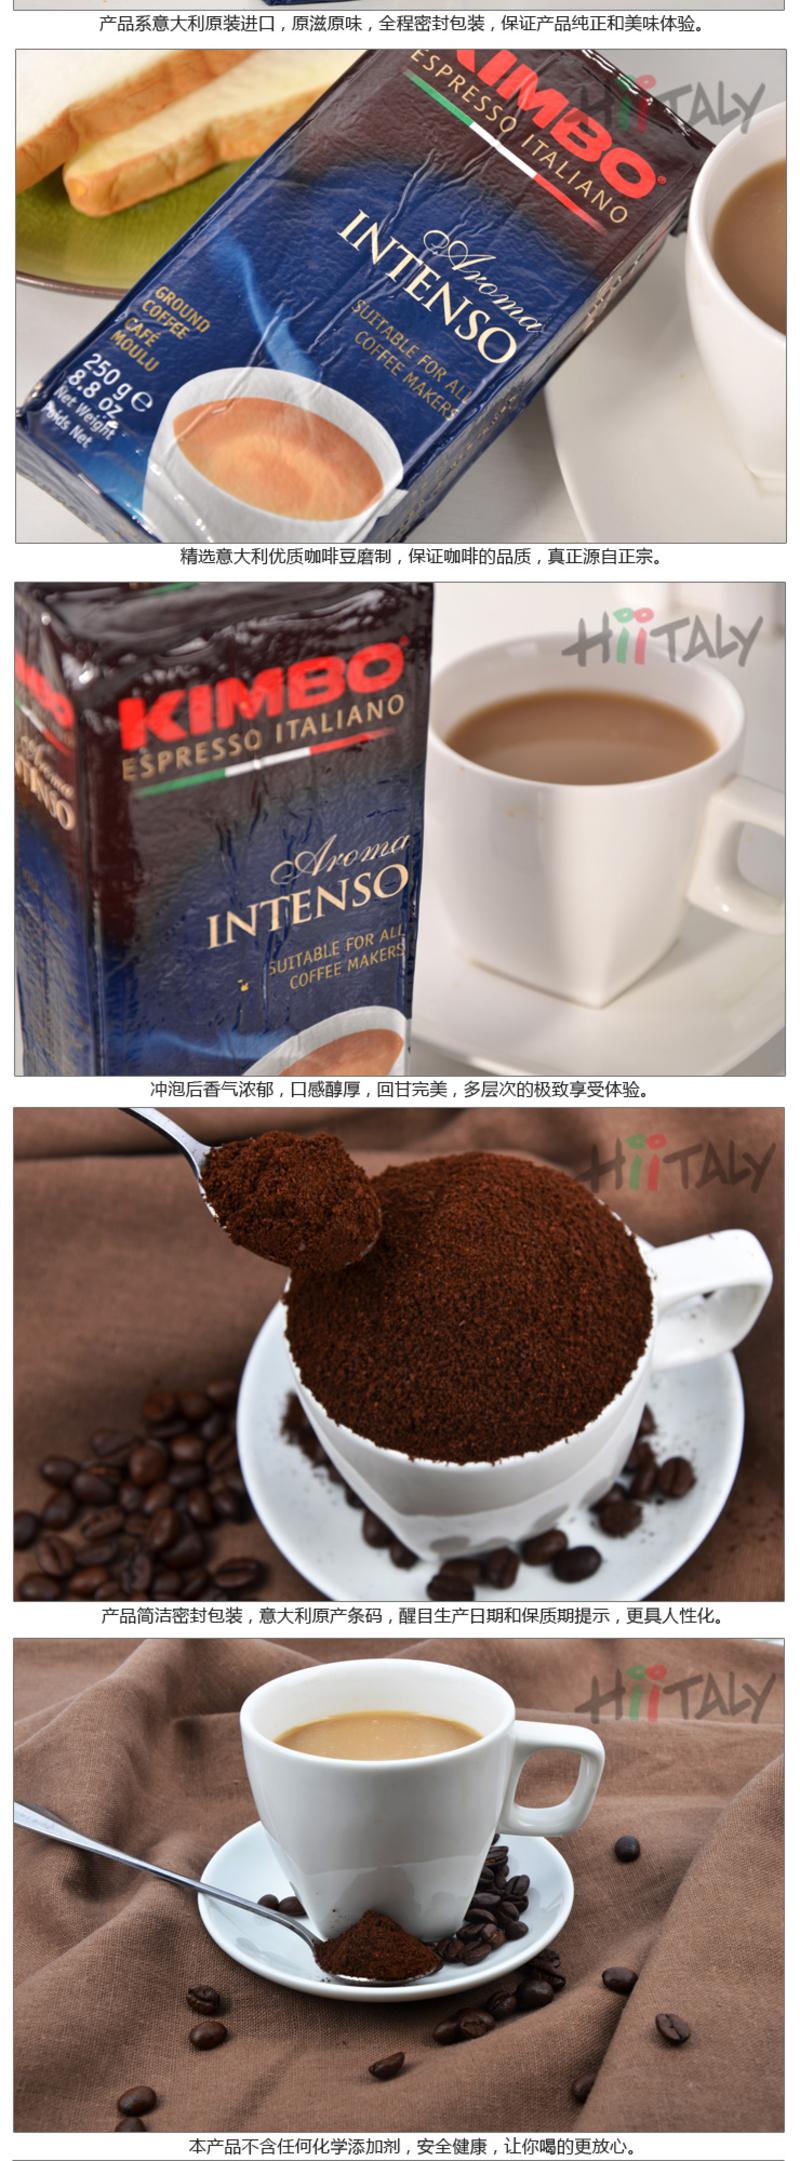 【淘最意大利】京博 KIMBO 京博牌香浓咖啡粉 250g 意大利进口咖啡